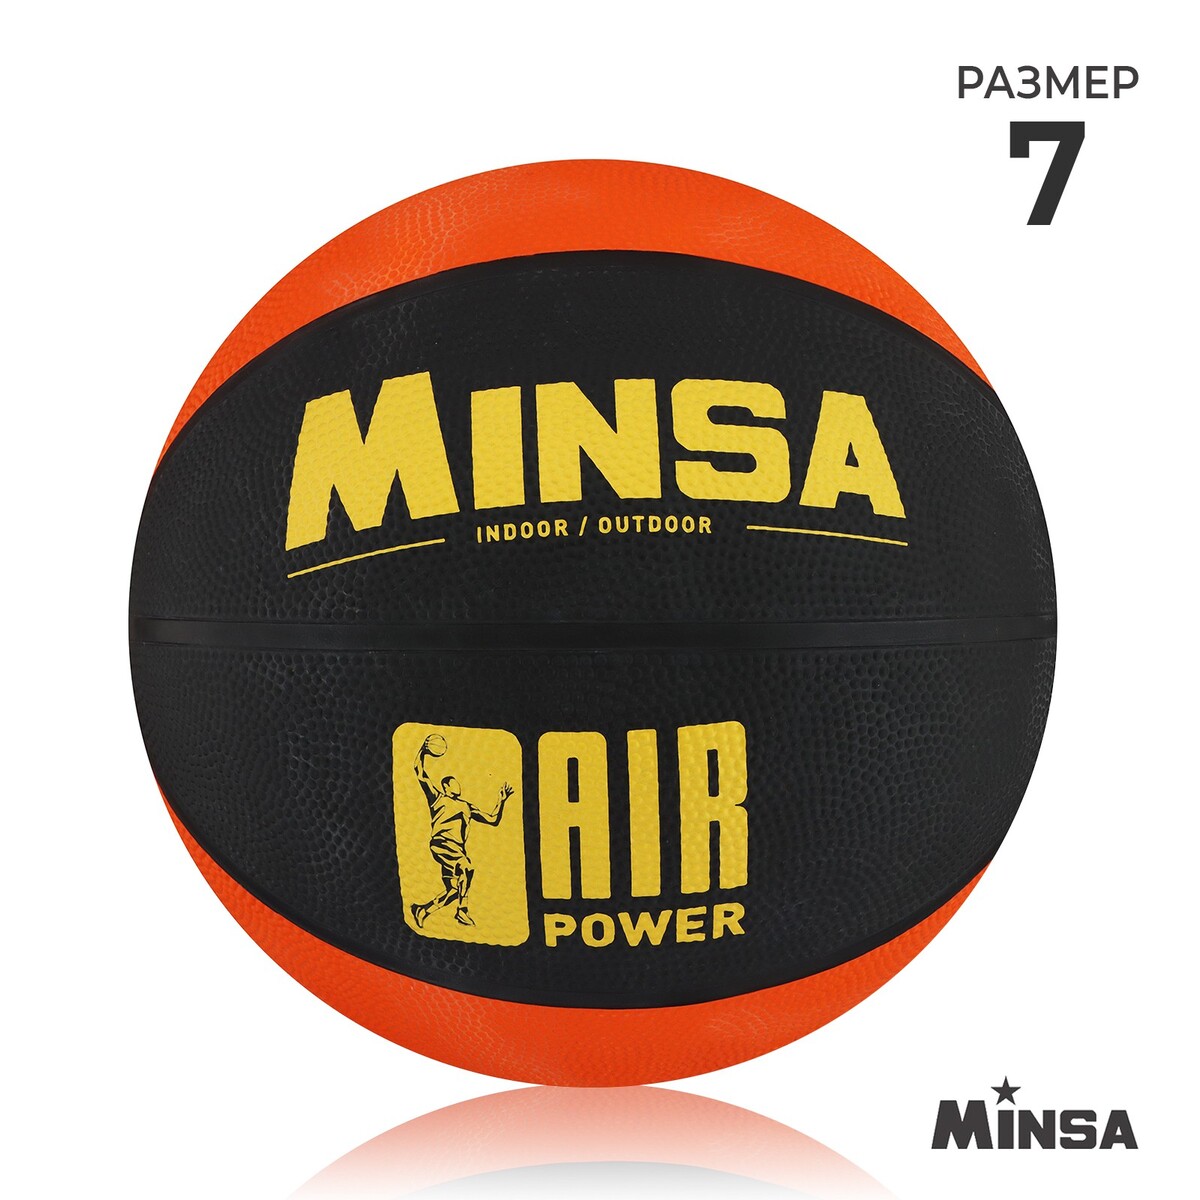 Мяч баскетбольный minsa air power, пвх, клееный, 8 панелей, р. 7 мяч баскетбольный minsa air power пвх клееный 8 панелей р 7